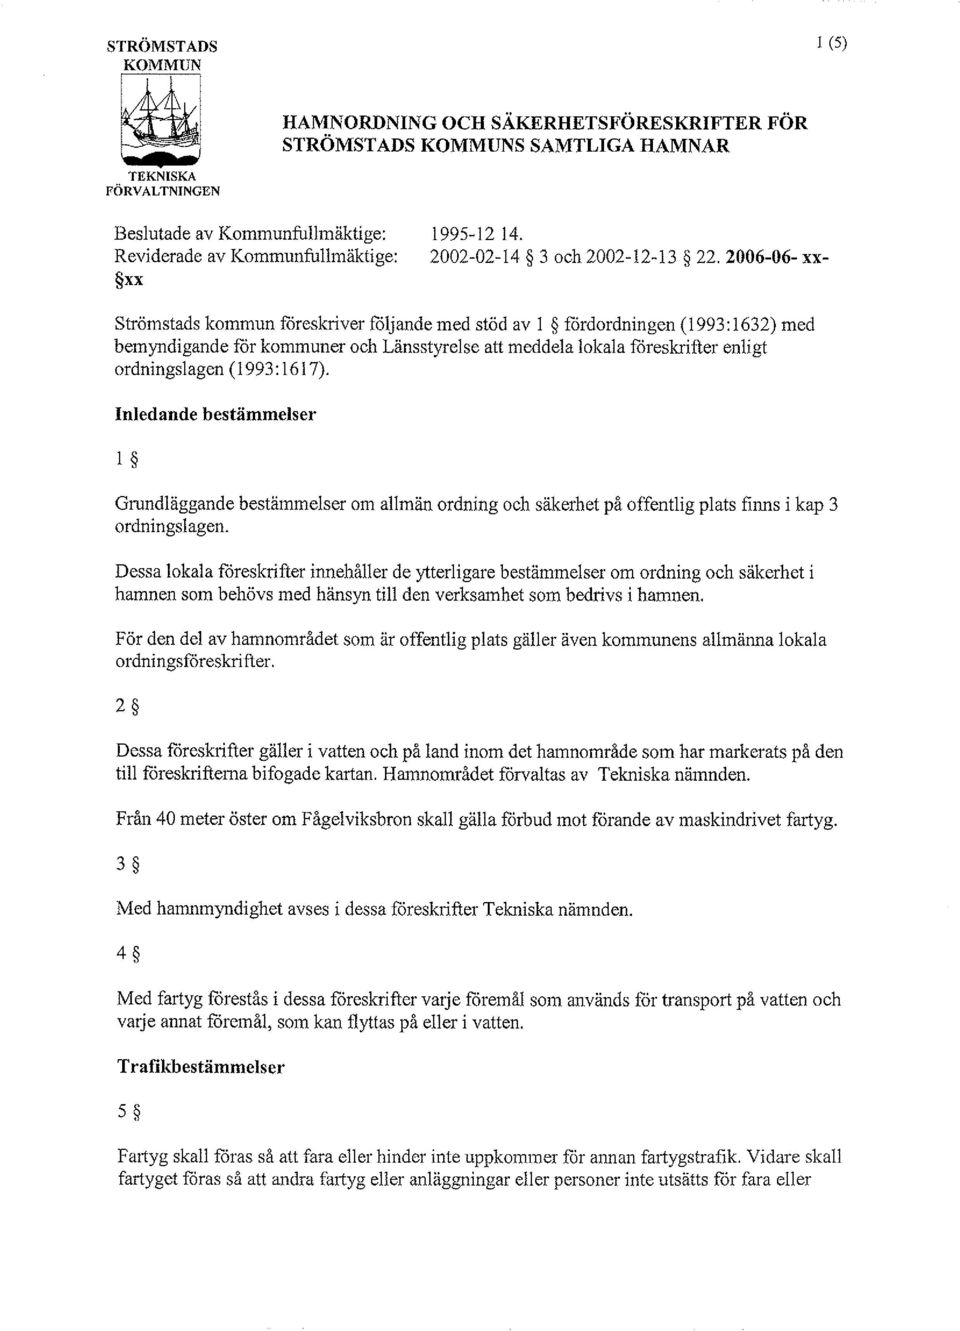 2006-06- xx- xx Strömstads kommun föreskriver följande med stöd av 1 5 fördordningen (1 993: 1632) med bemyndigande för kommuner och Lansstyrelse att meddela lokala föreskrifter enligt ordningslagen